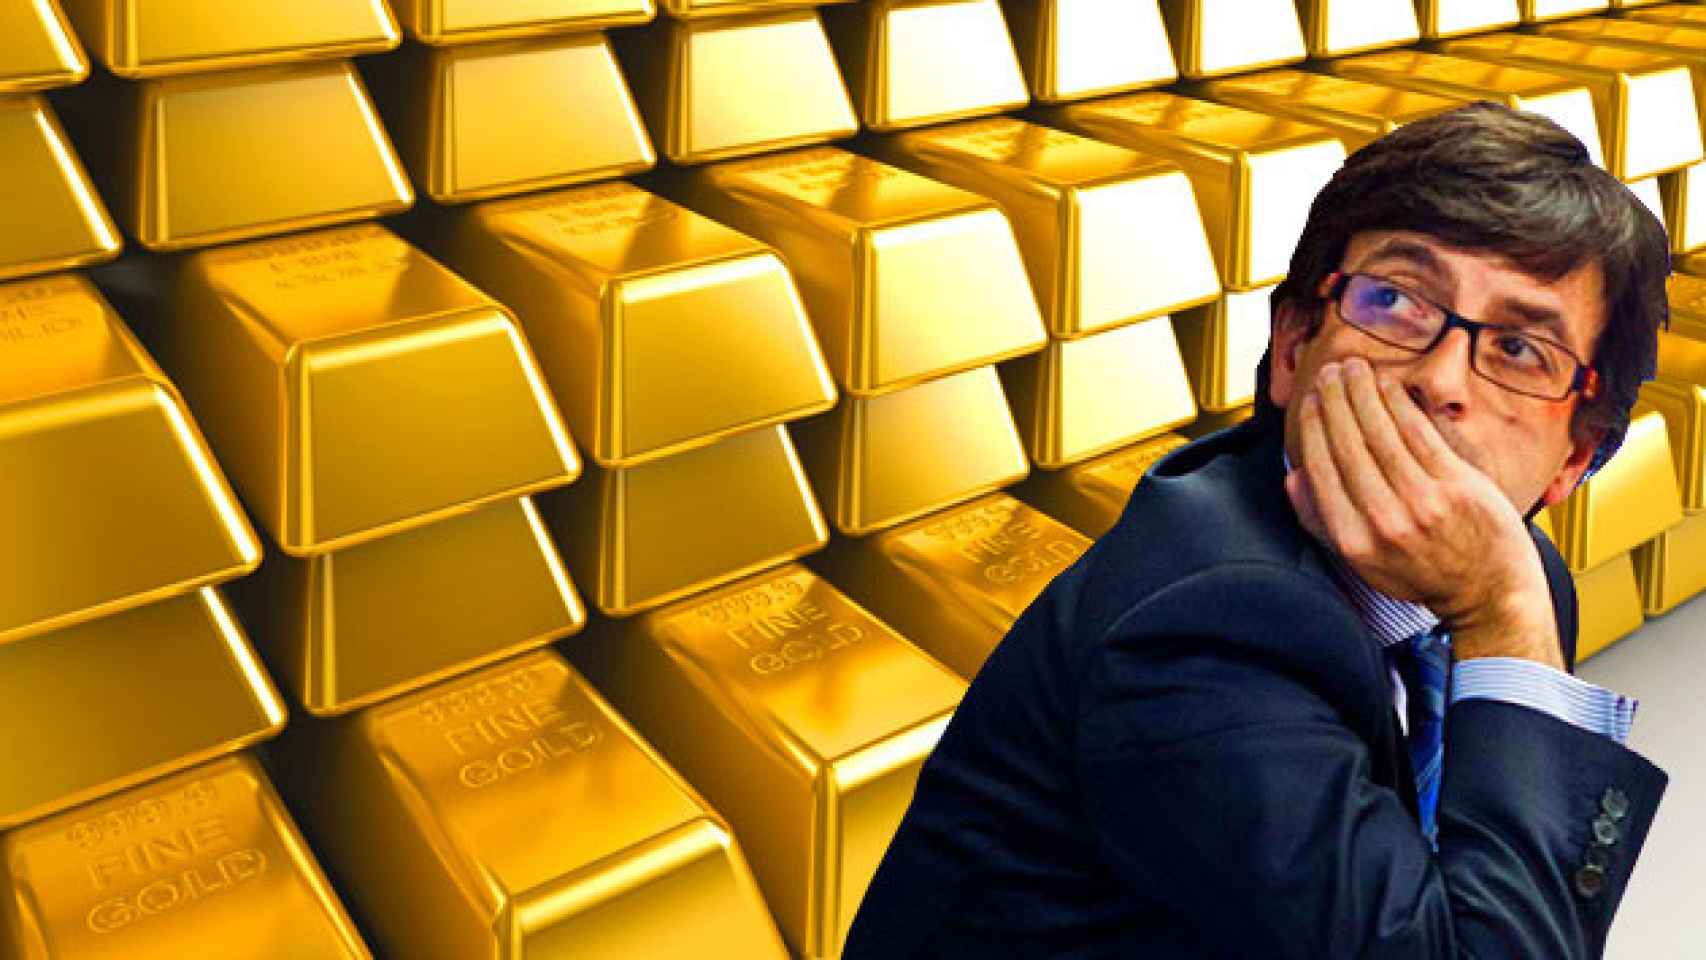 Jordi Cinca, ministro de Finanzas de Andorra, mirando lingotes de oro / FOTOMONTAJE DE CG